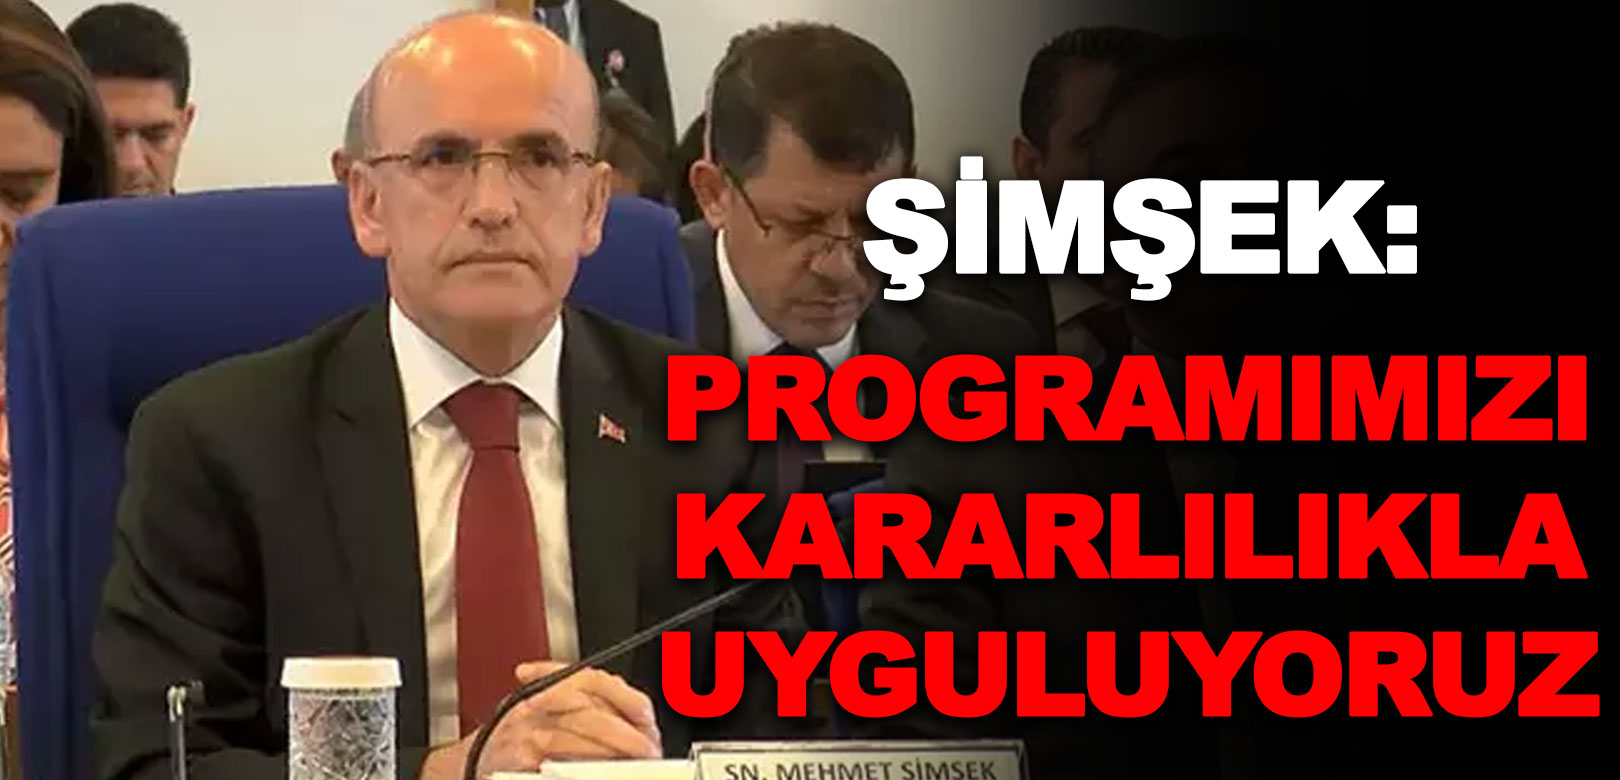 Mehmet Şimşek'ten fiyat istikrarına ilişkin açıklama: Programımızı kararlılıkla uyguluyoruz